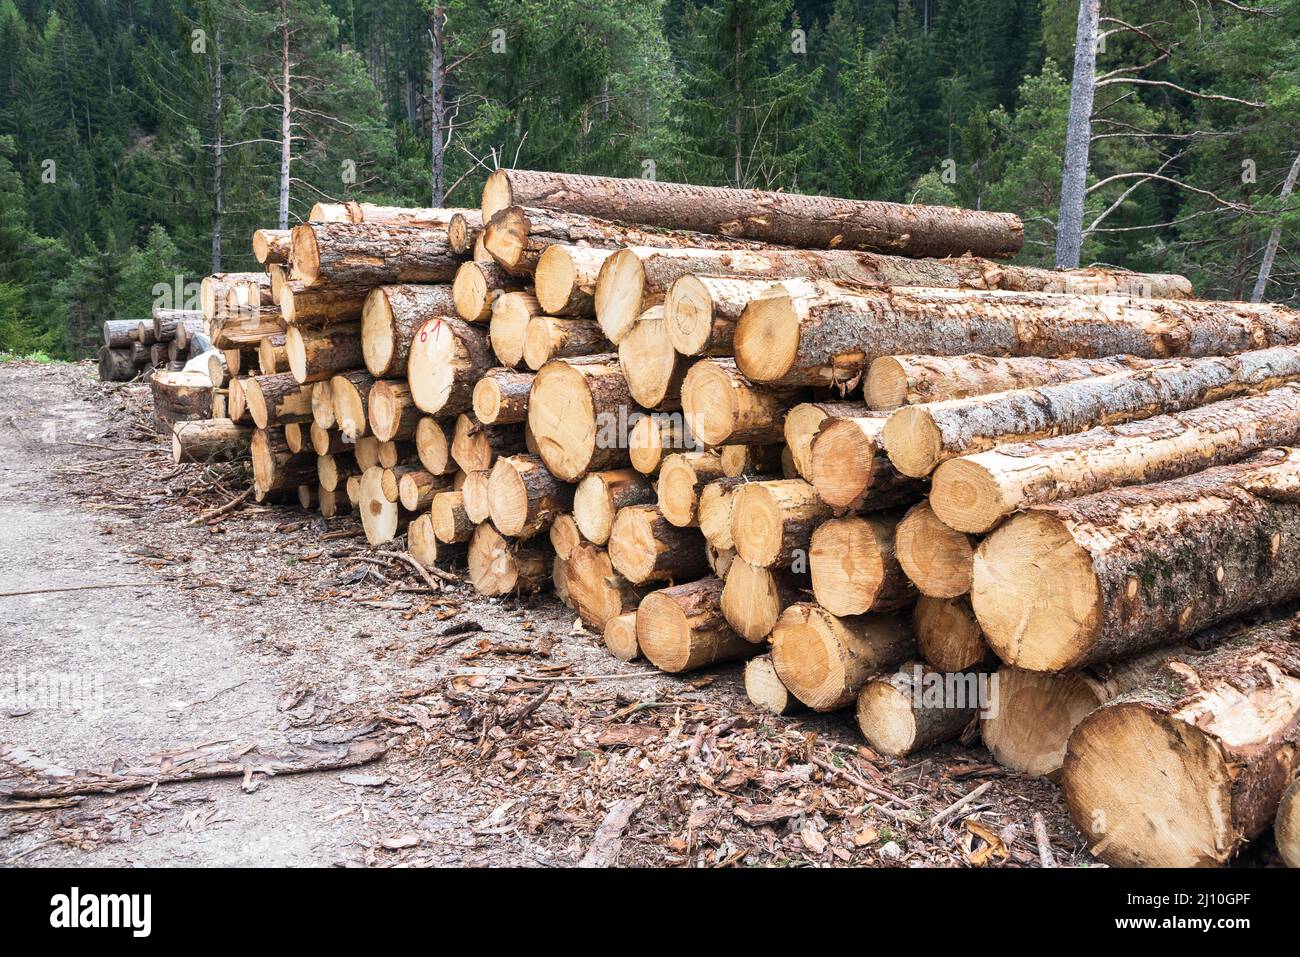 Apile los troncos de aserrado a lo largo de un camino forestal en las montañas. Industria maderera. Foto de stock